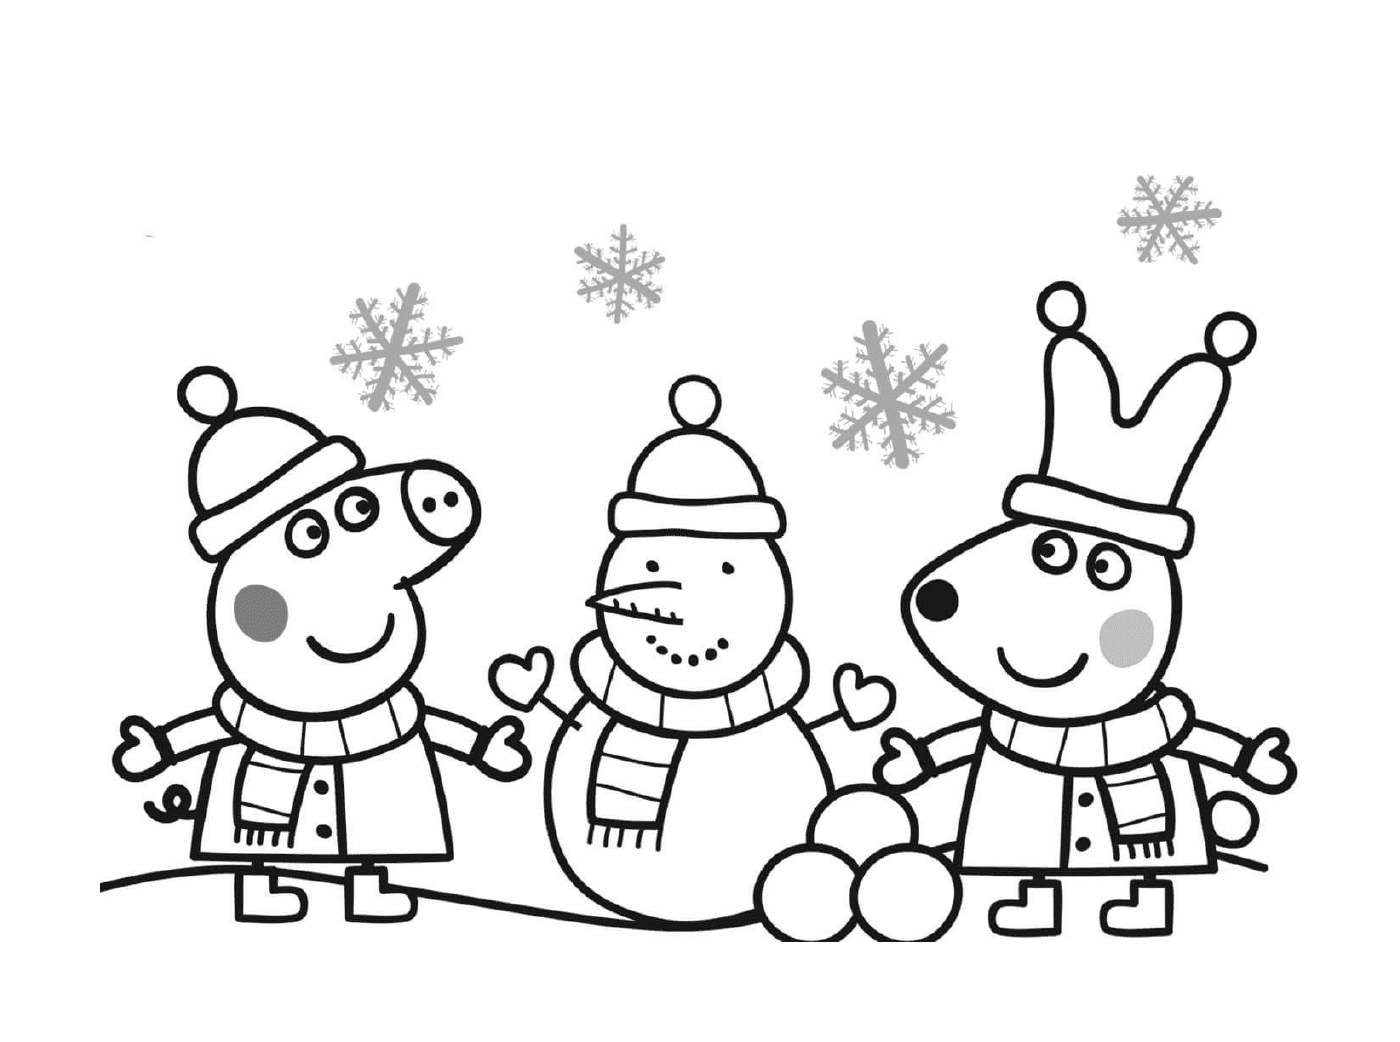  Пеппа Свинья празднует Рождество с снеговиком 